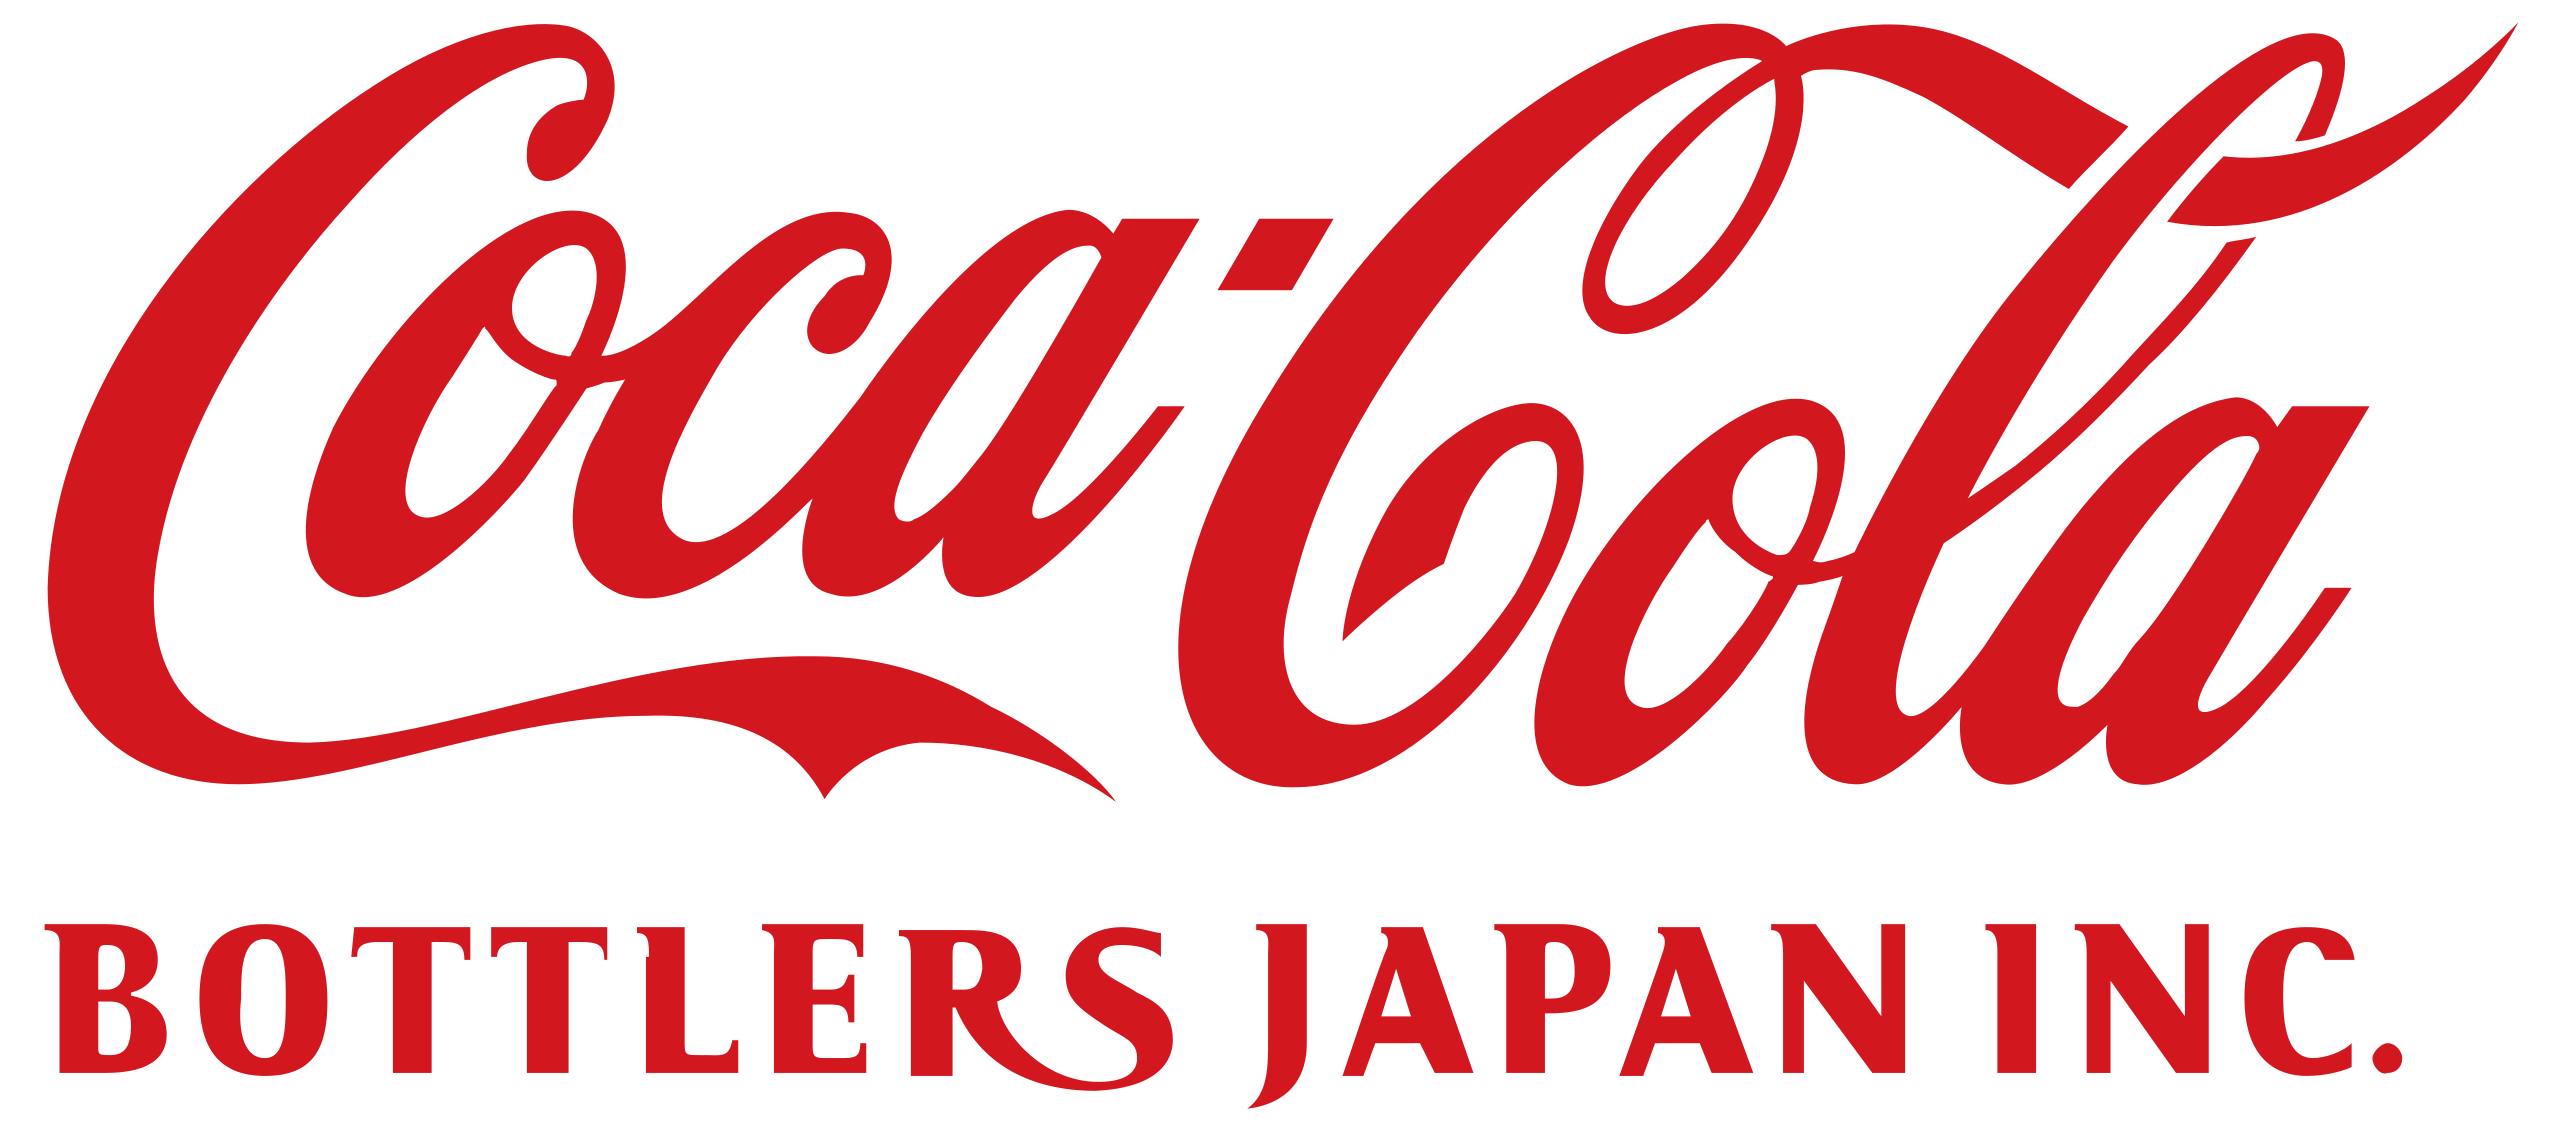 Logotipo de embotelladores de Coca-Cola Japón